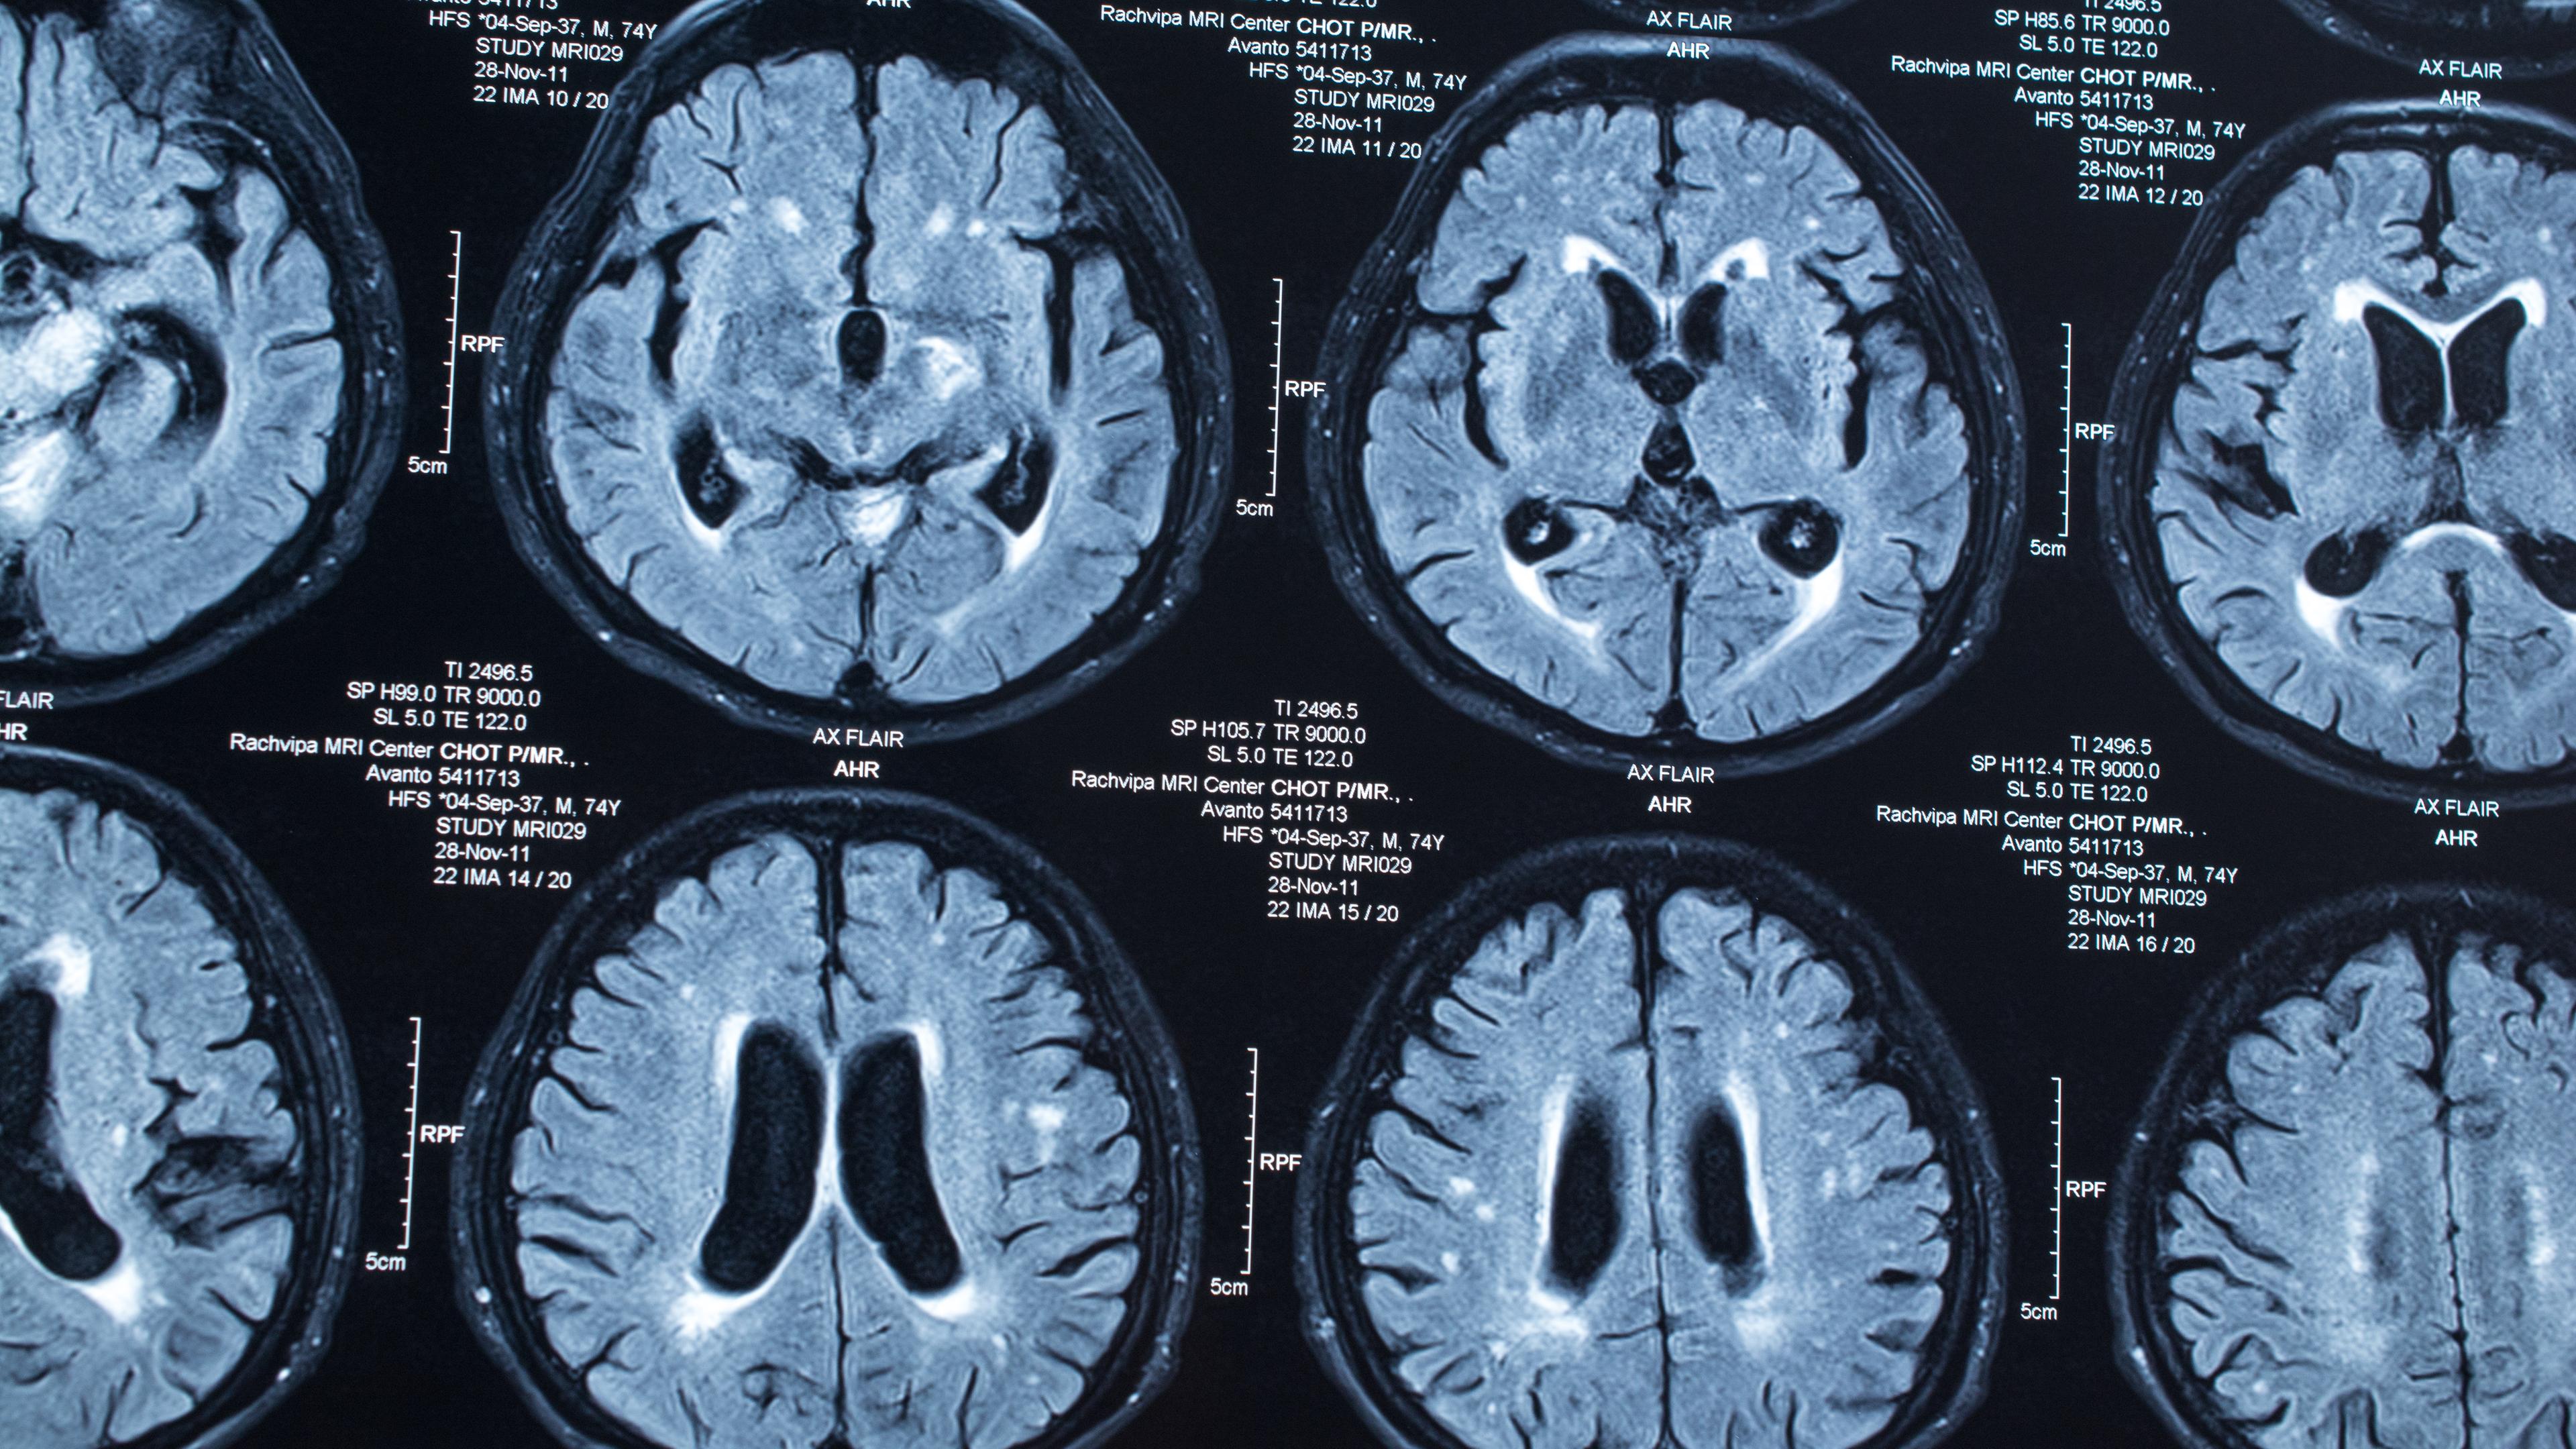 Röntgenbilder des Gehirns